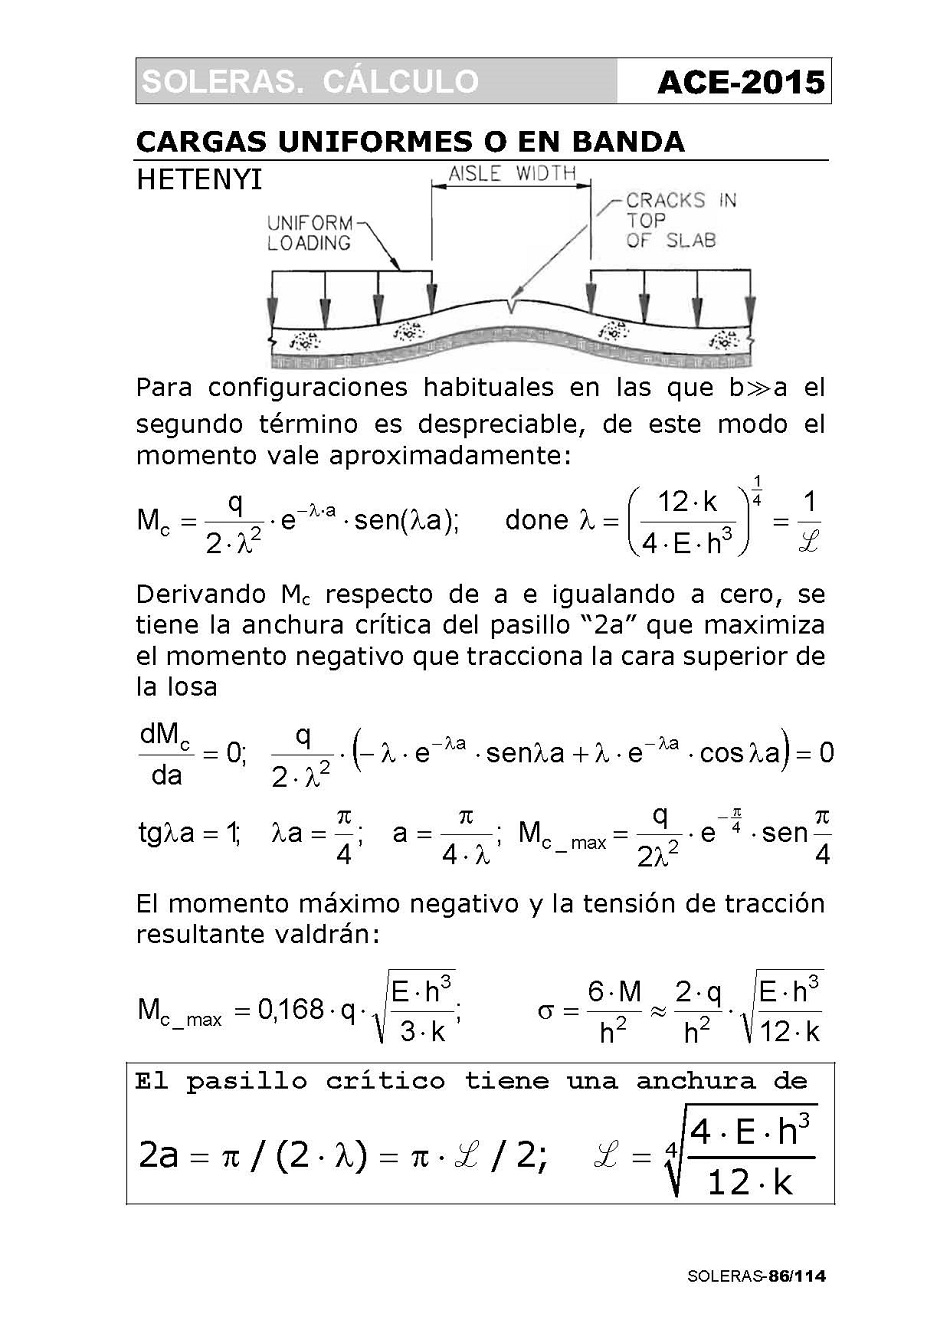 Cálculo de Soleras de Hormigón. Página 86